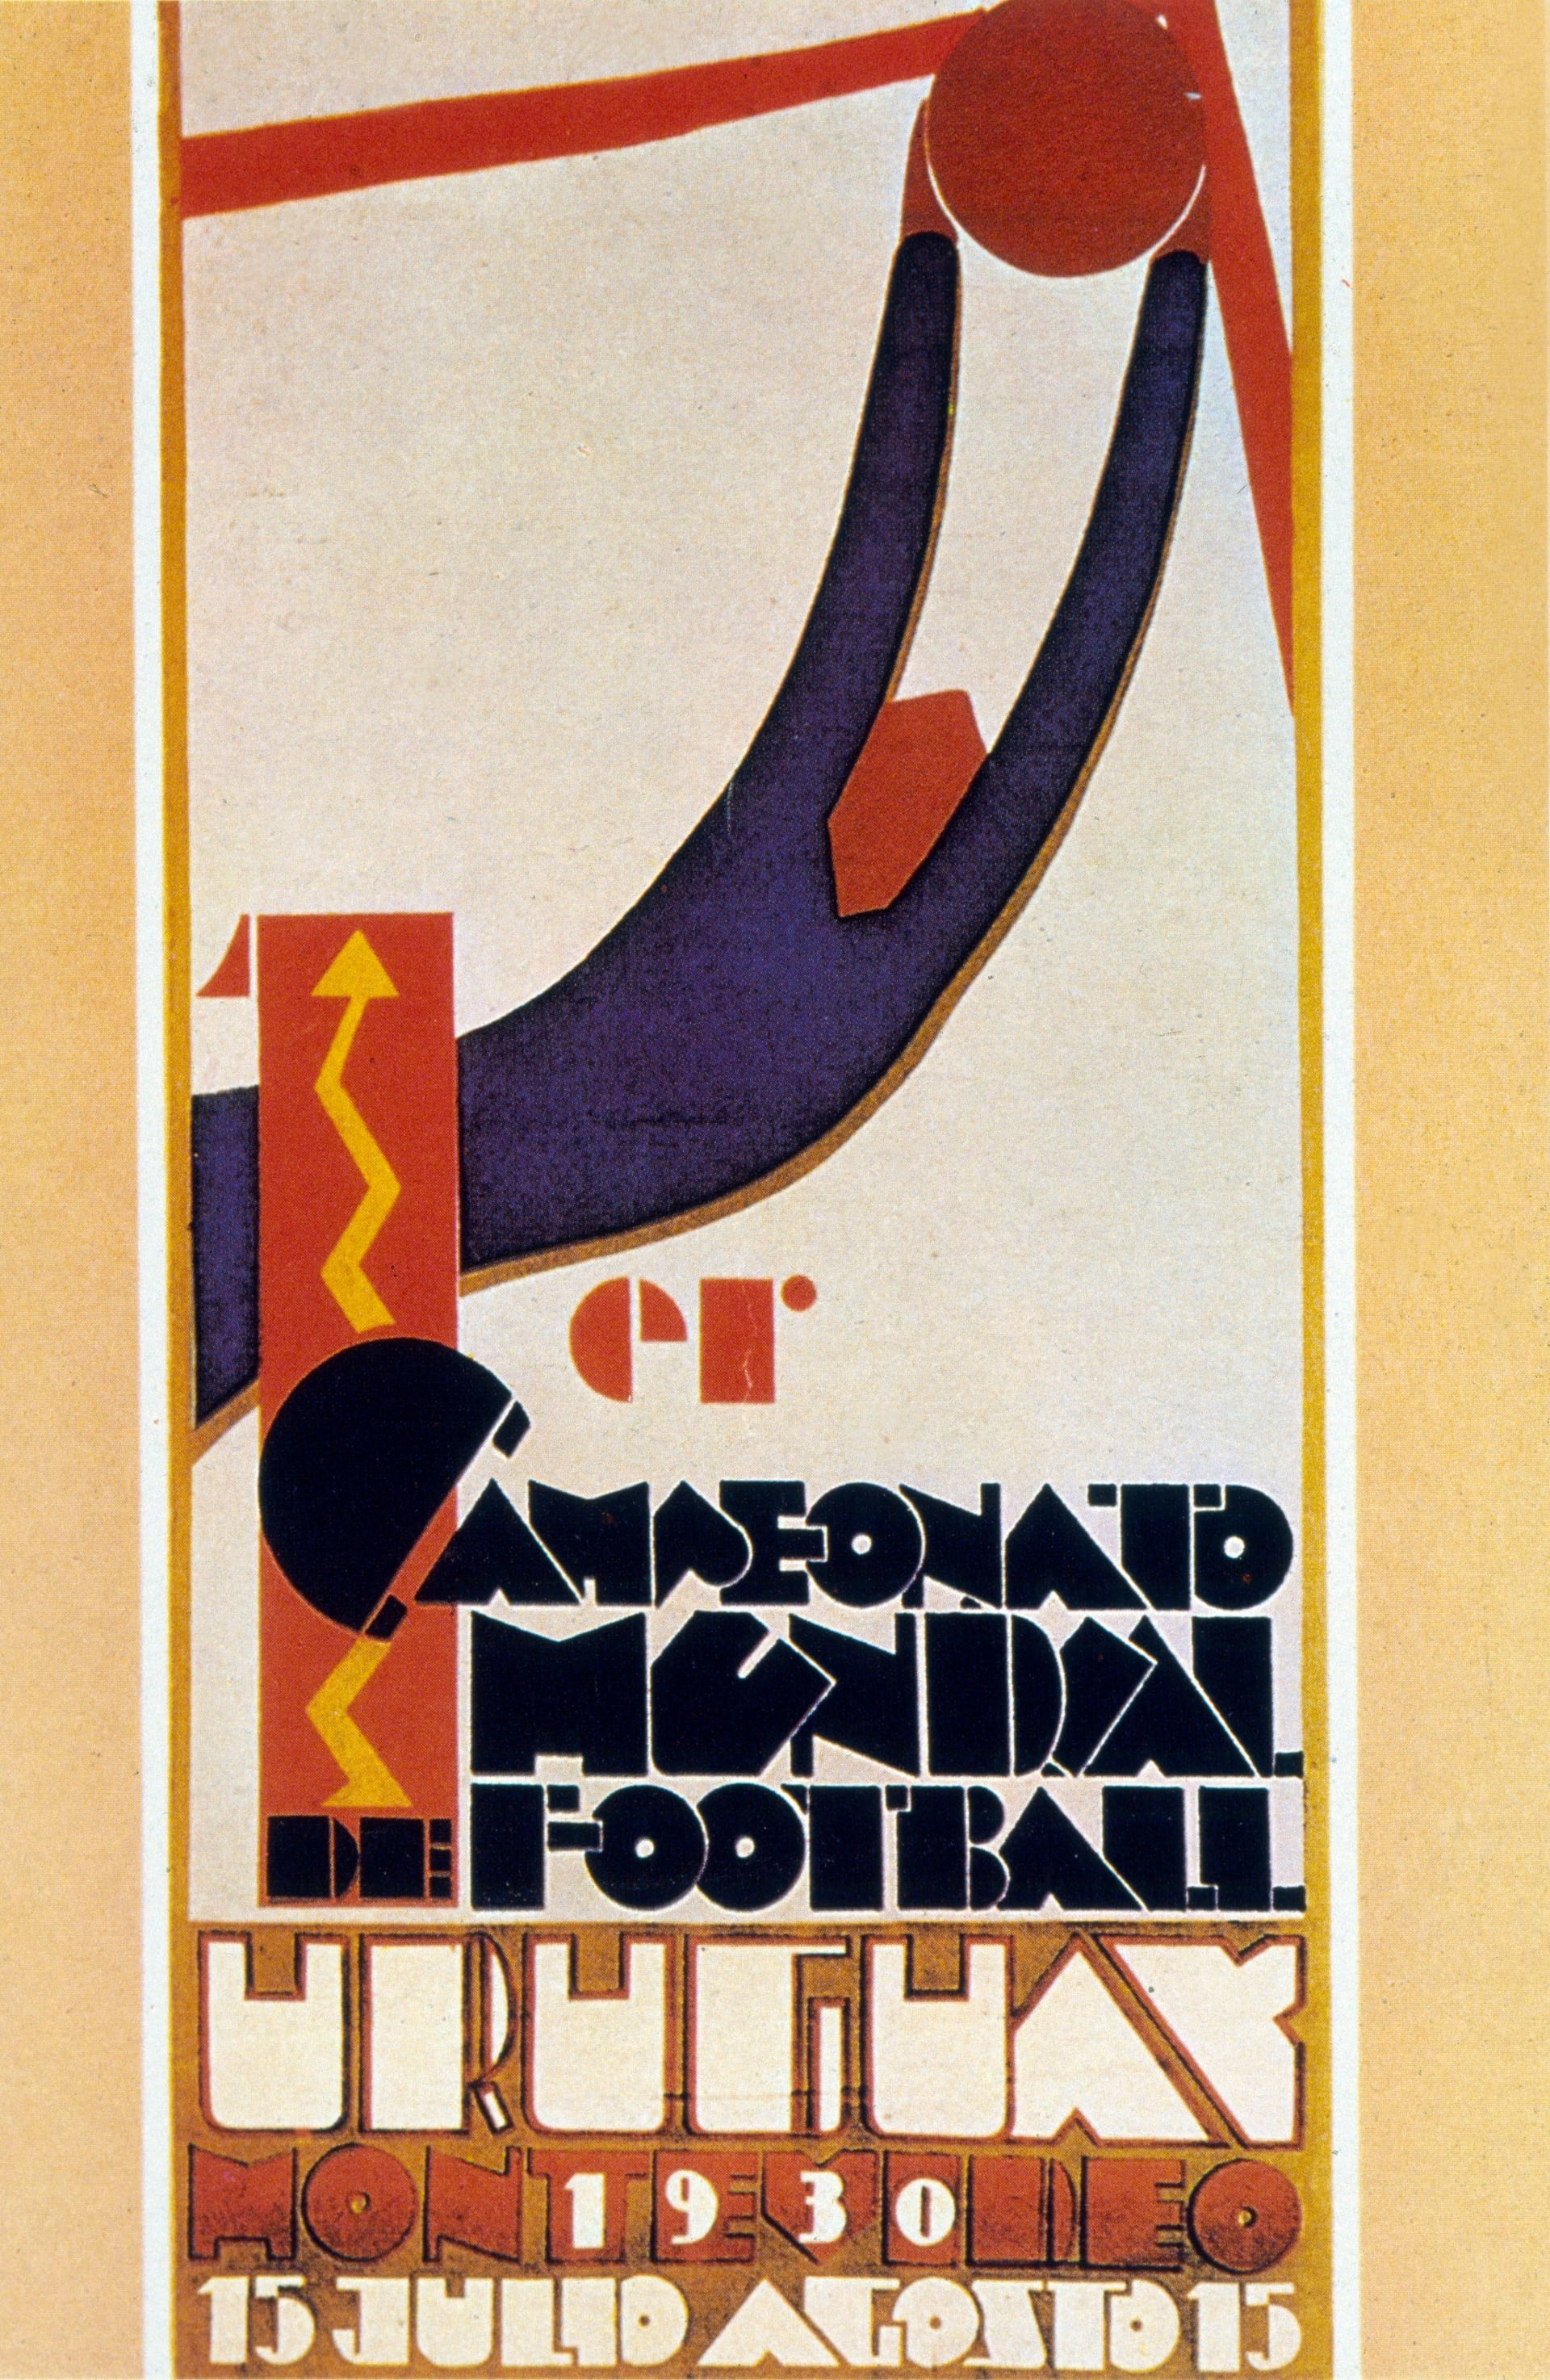 Oficjalne plakaty mistrzostw świata. Od Urugwaju 1930 do Rosji 2018